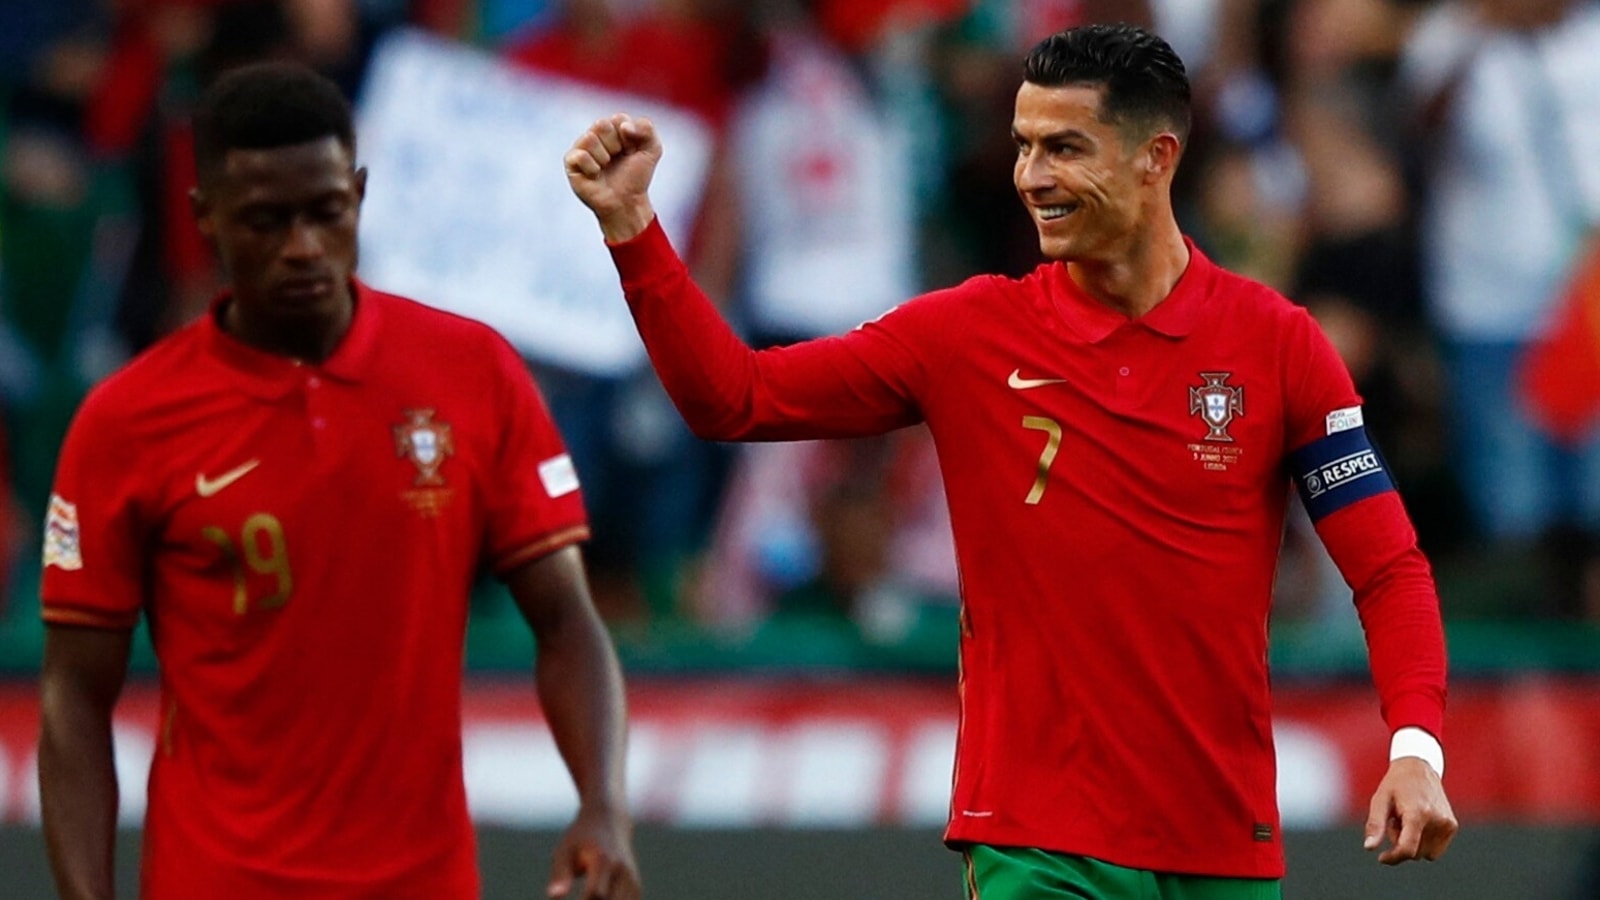 Estatísticas inacreditáveis ​​sugerem que Ronaldo, Portugal, deve vencer a Copa do Mundo da FIFA Qatar 2022 |  notícias de futebol